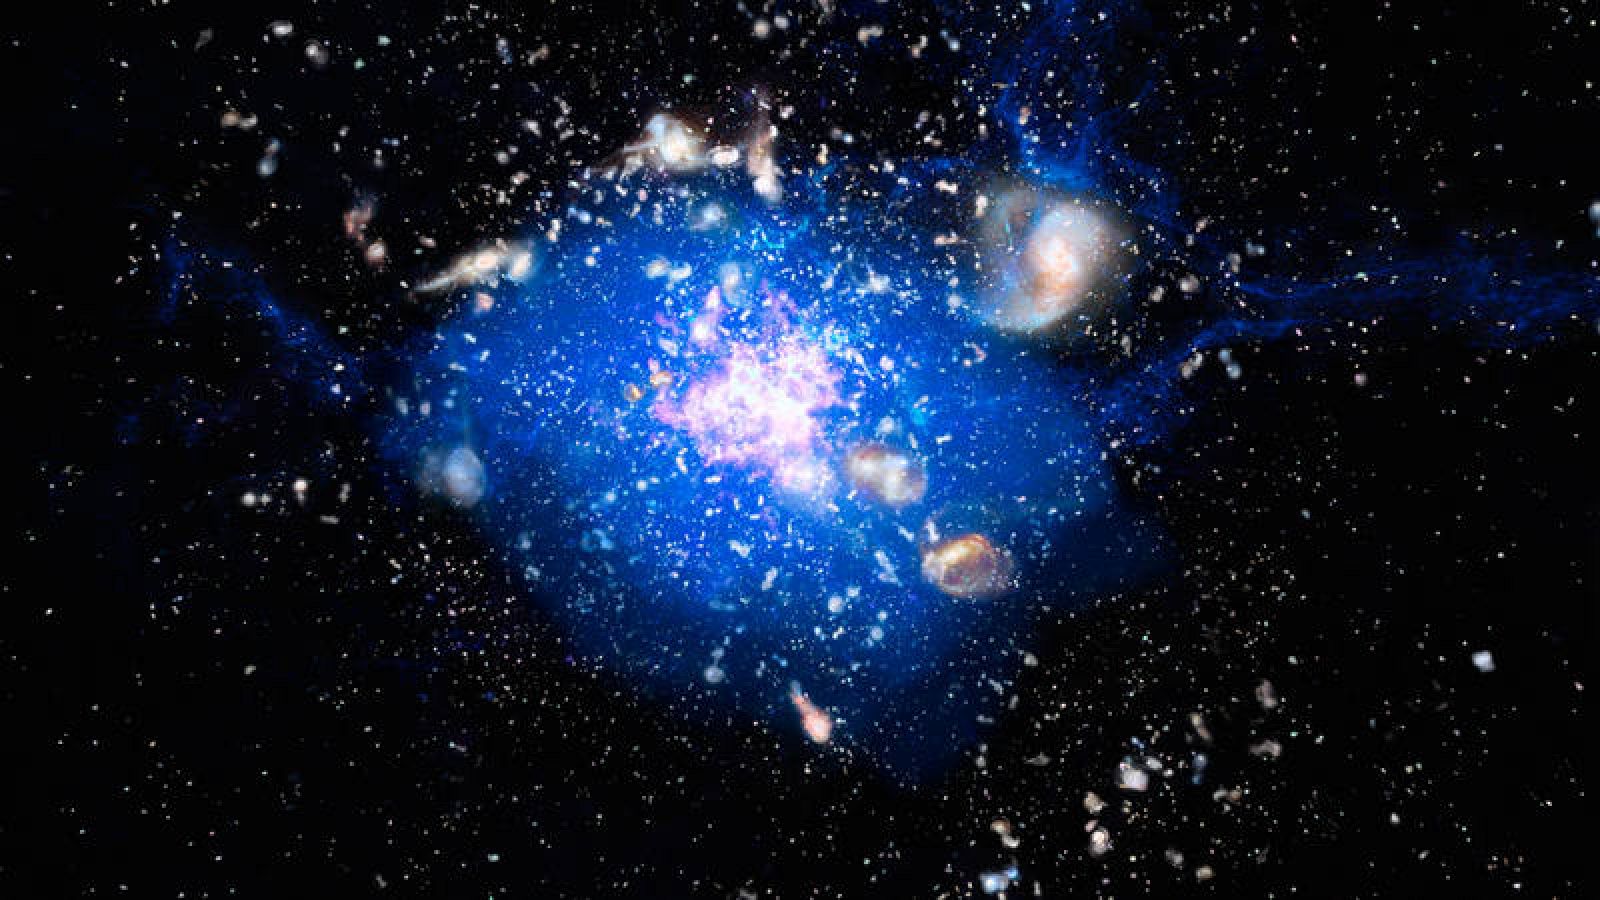 MRC 1138-262, apodada Spiderweb (telaraña), es una supergalaxia que está formándose dentro de una nube de gas frío.